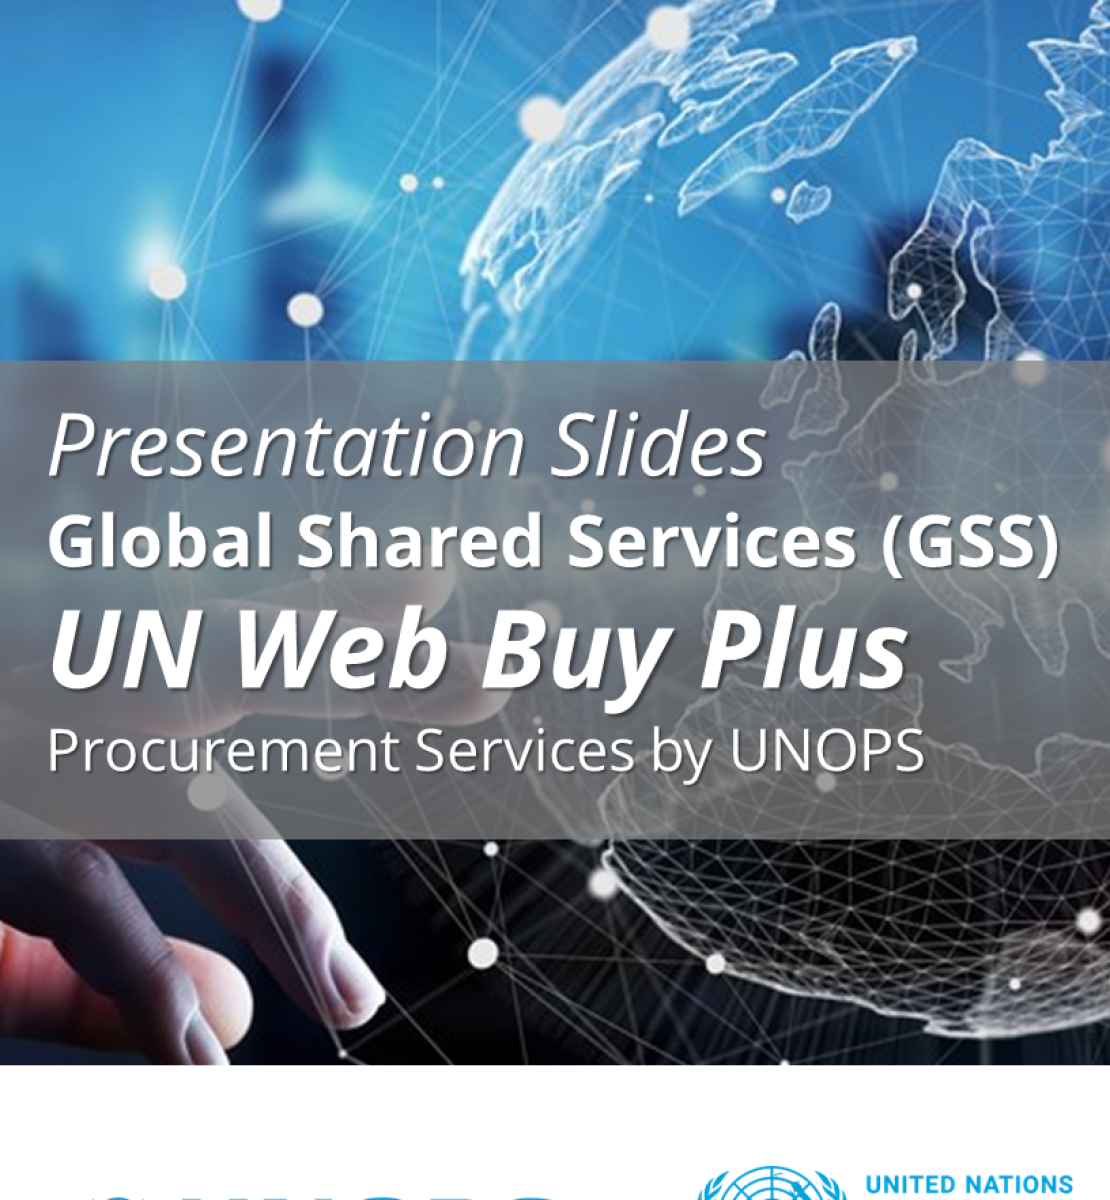 Diapositivas de la presentación sobre UN Web Buy Plus.